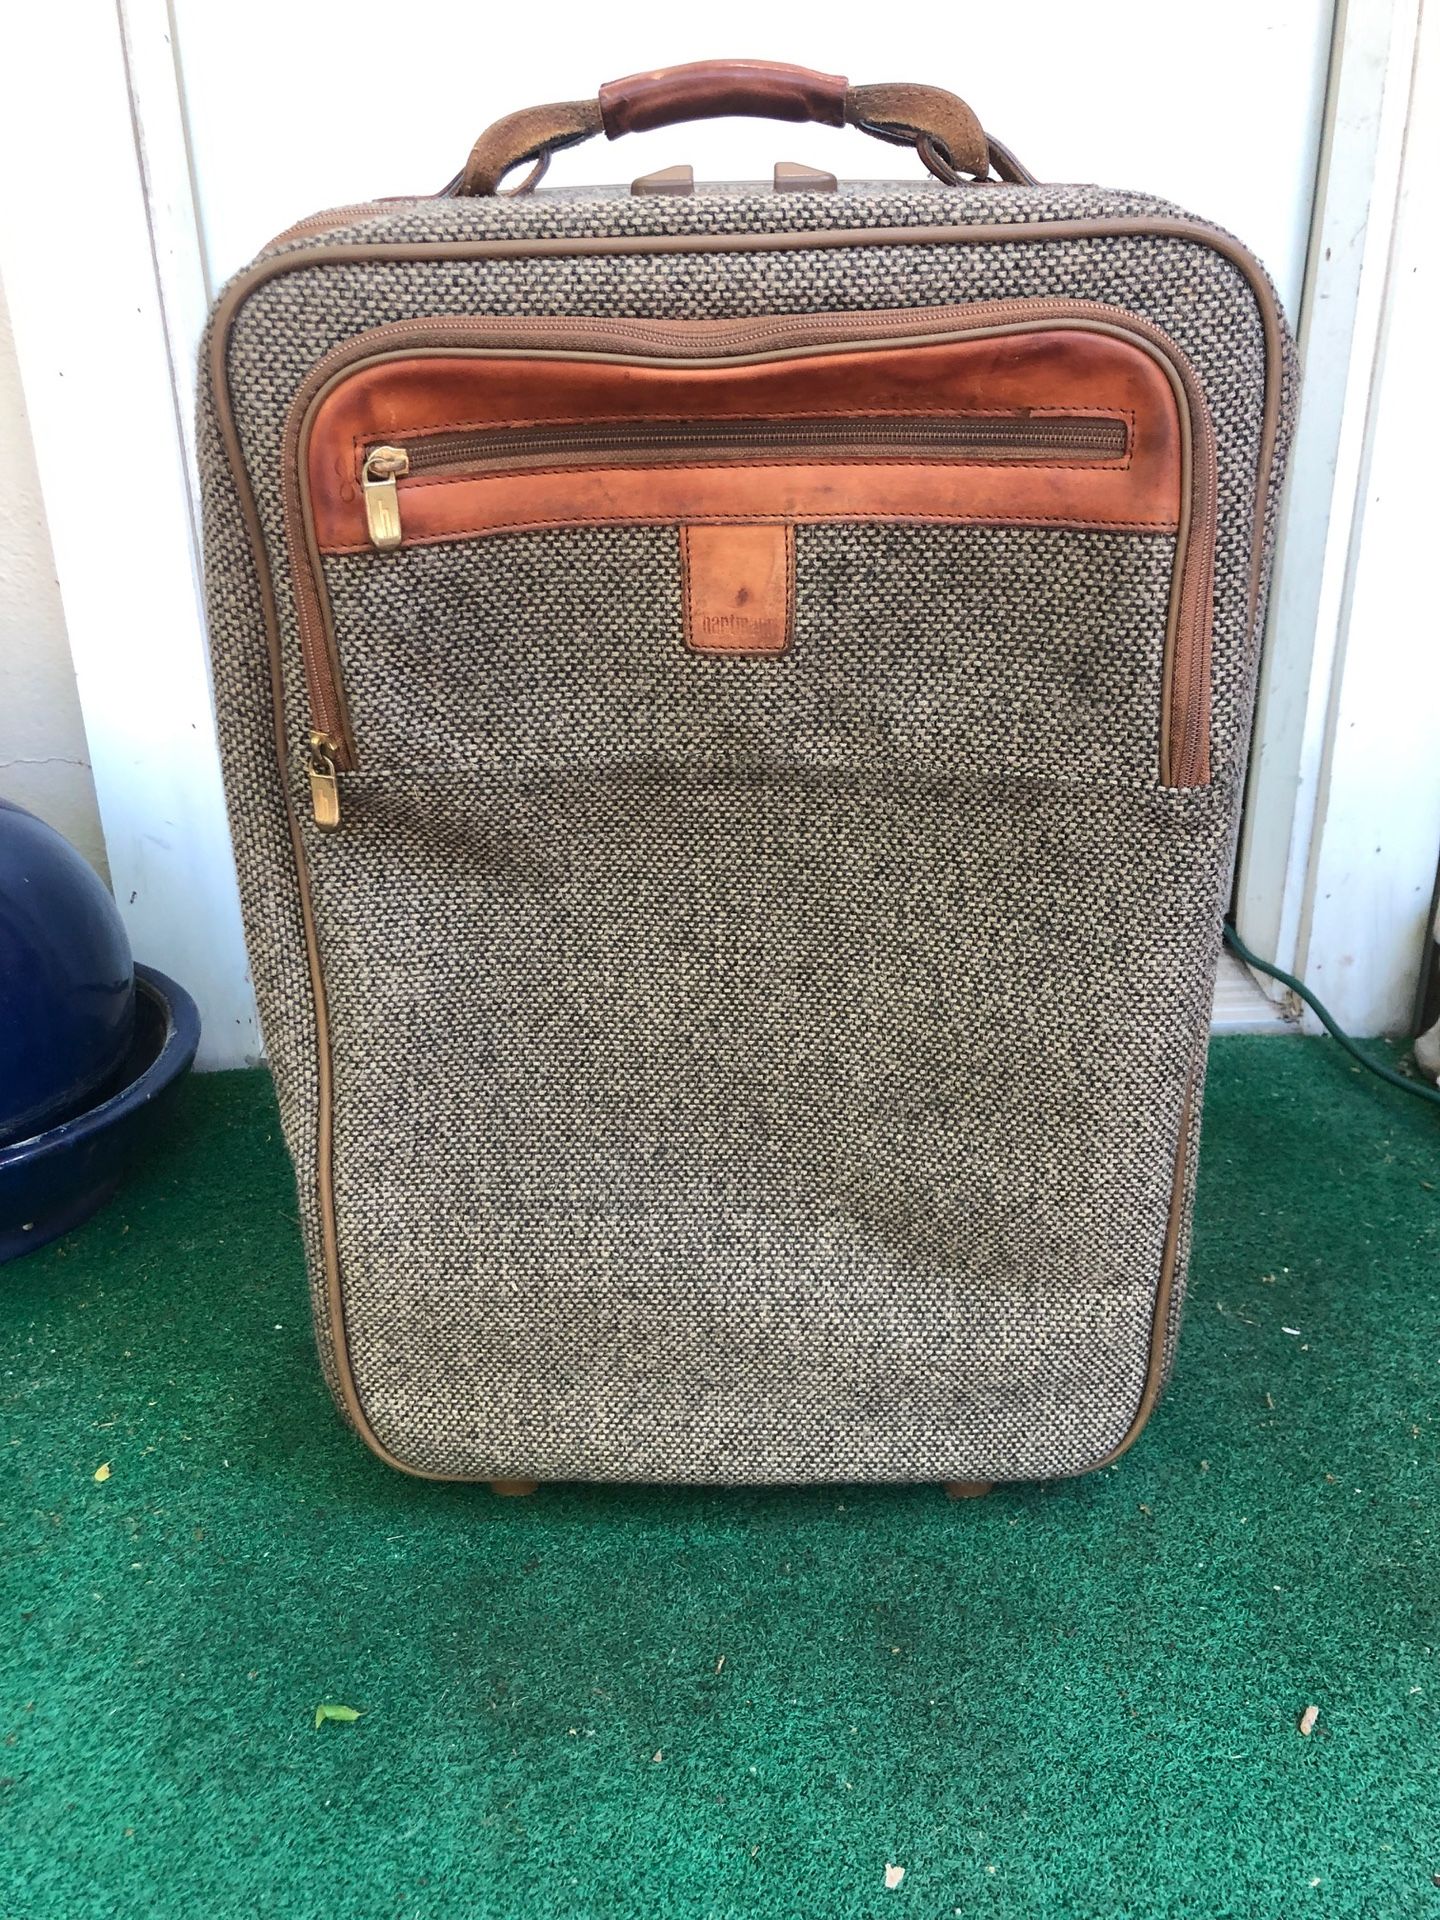 Vintage Hartman Tweed Rolling Carry On Travel Bag